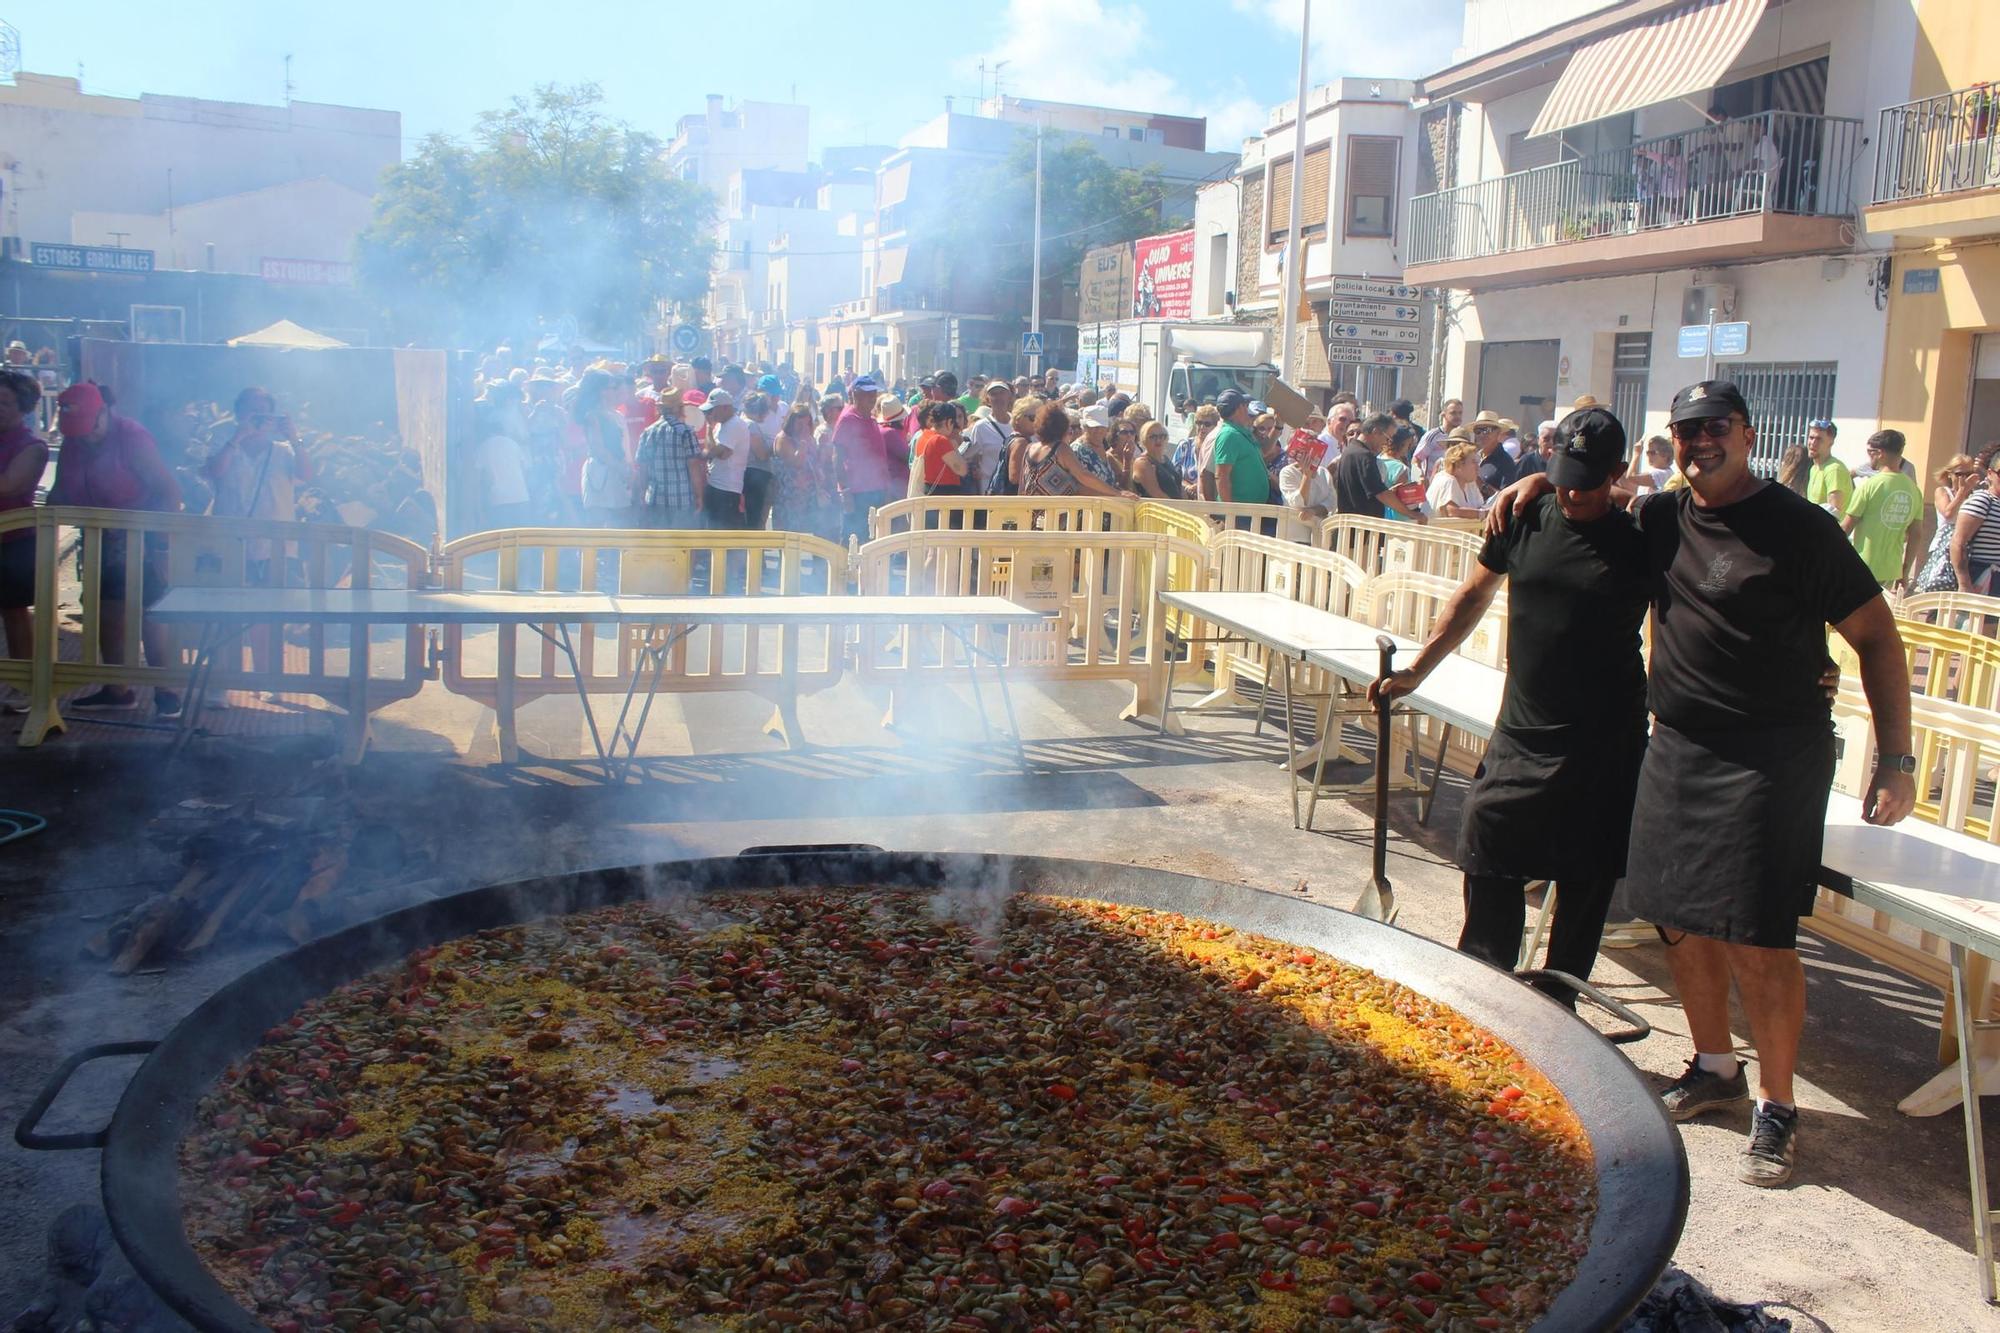 Las mejores fotos del Día de las Paellas en Orpesa